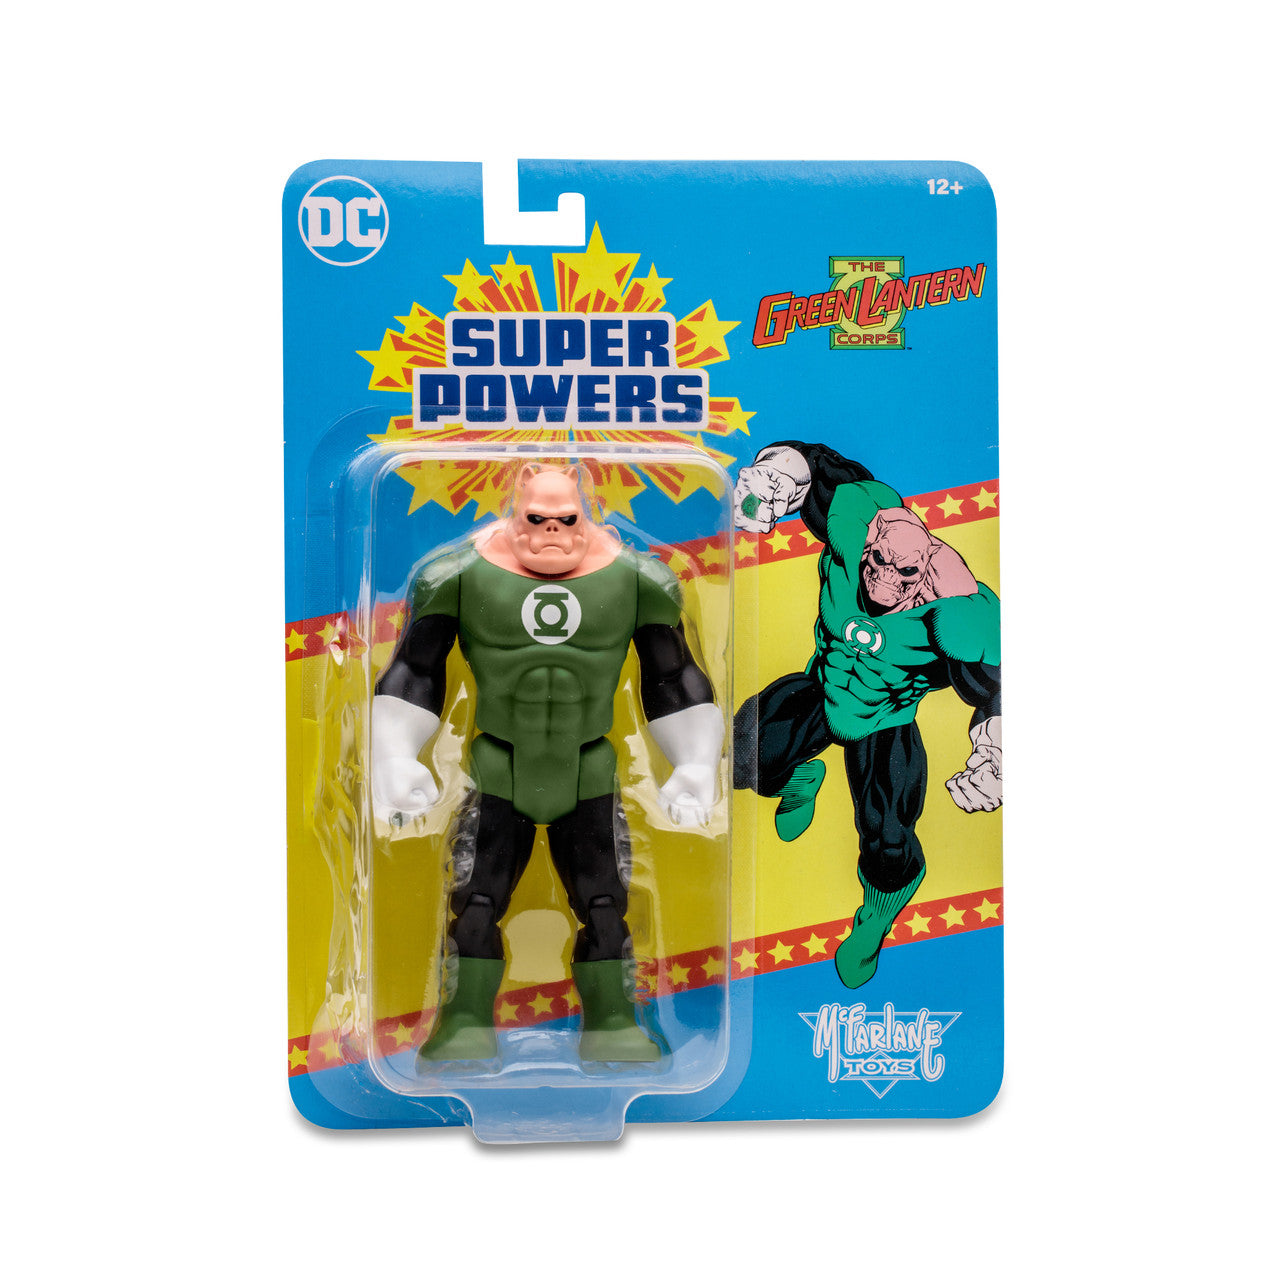 DC Super Powers wave 7 - Kilowog 4.5" Action Figure Toy